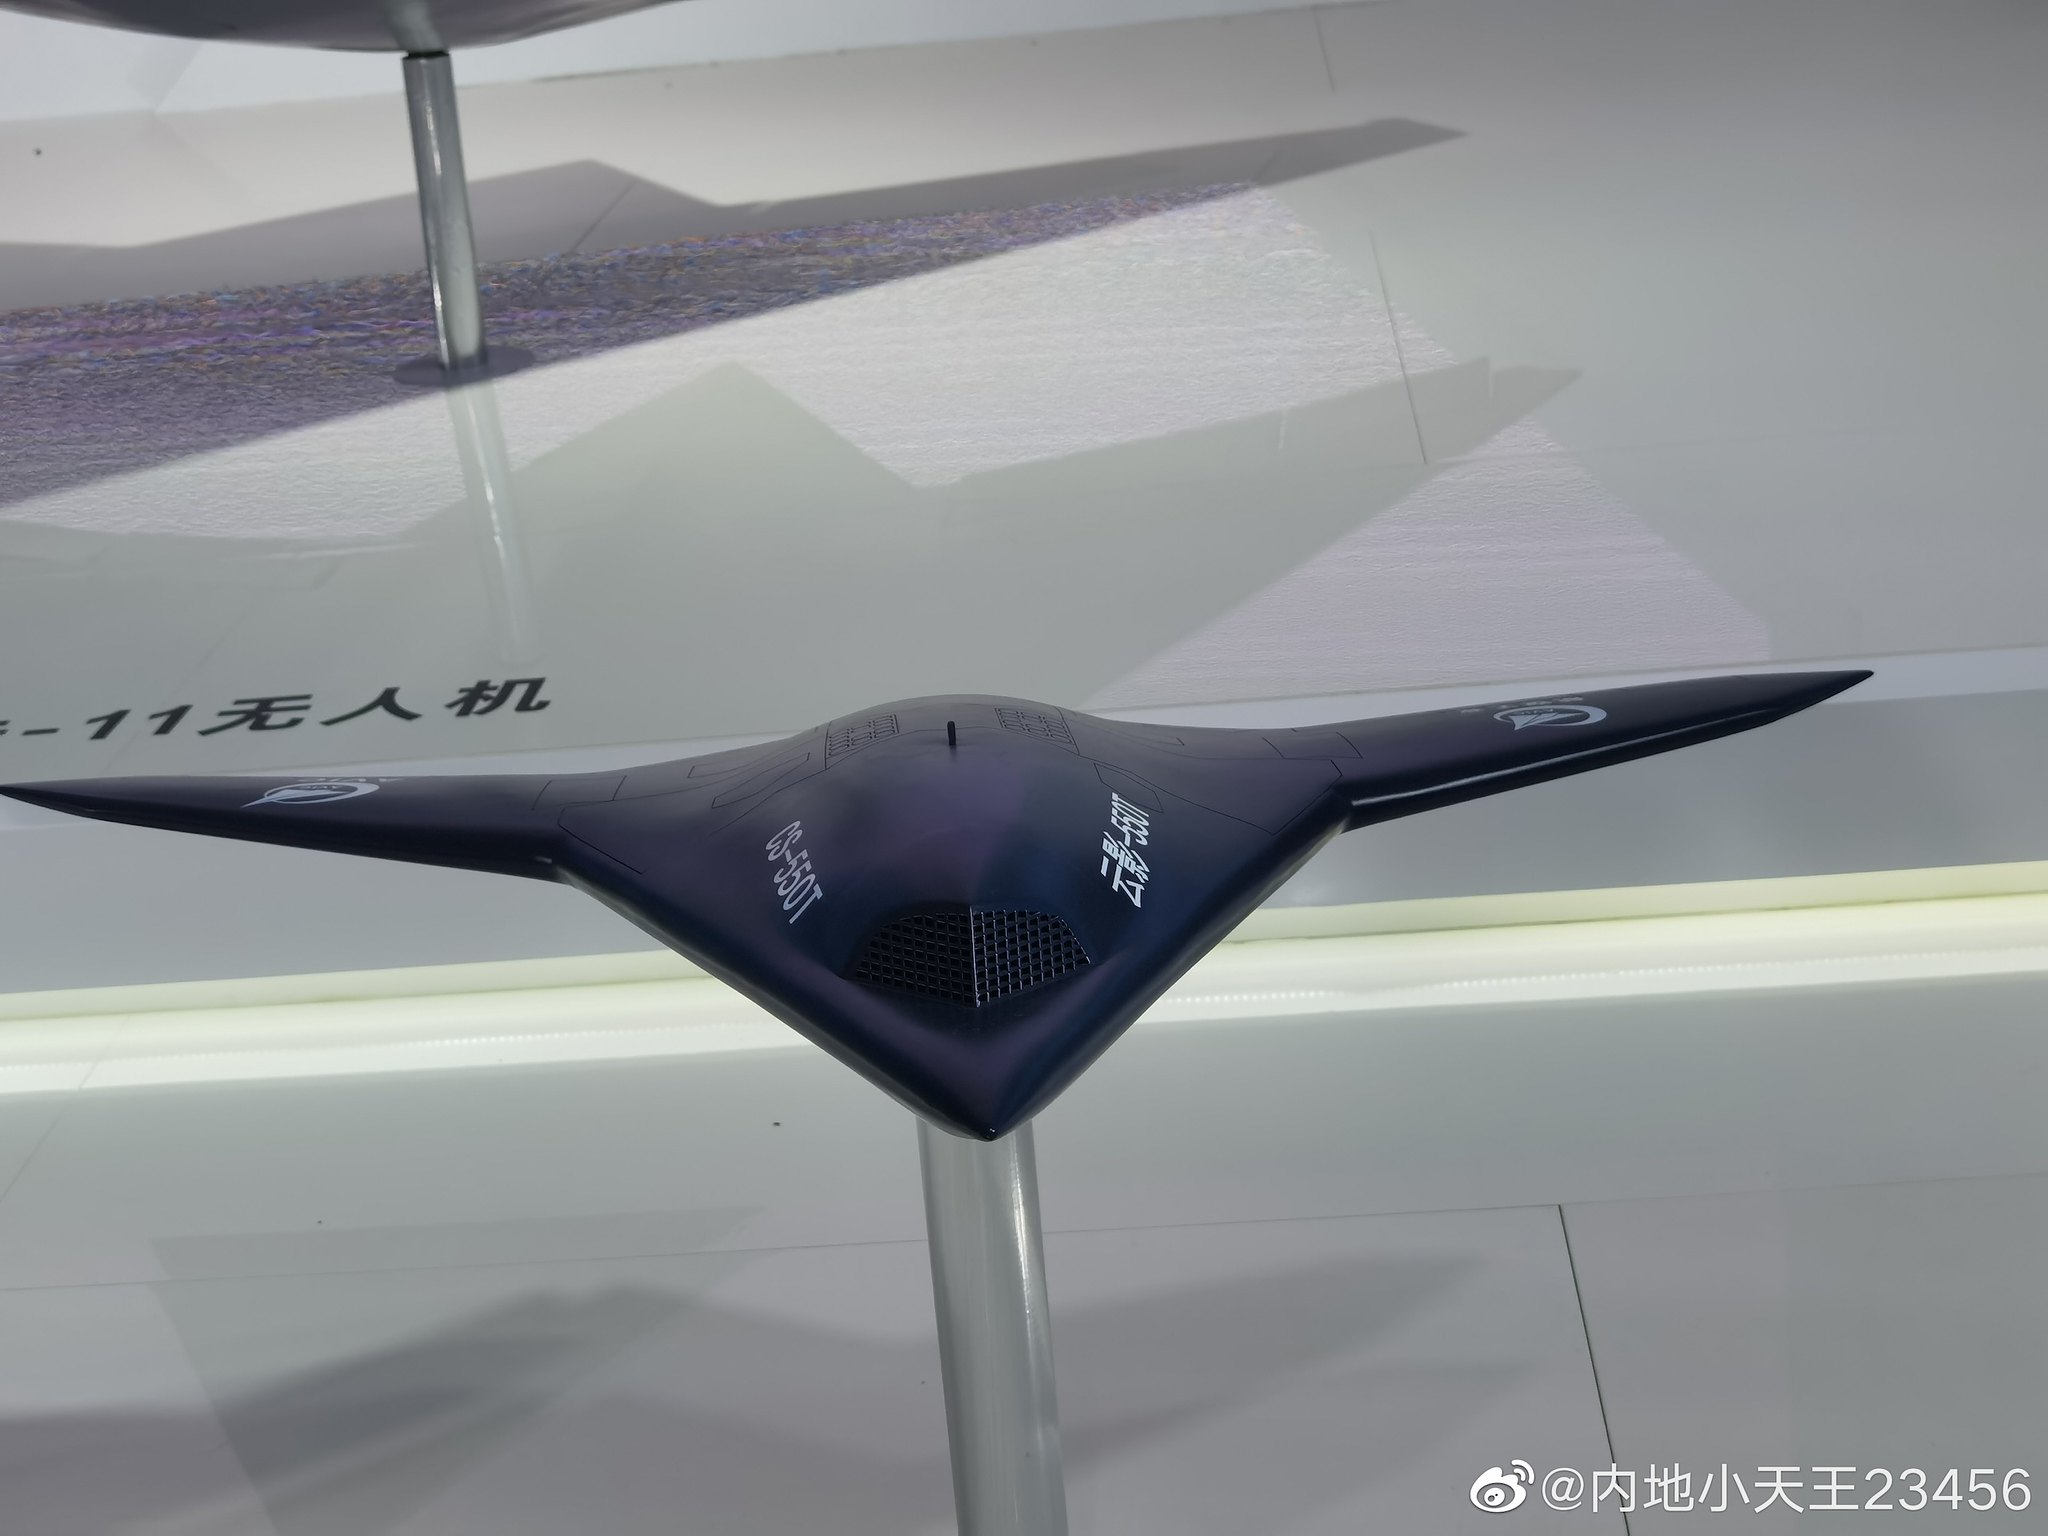 Un mystérieux drone furtif similaire au Northrop Grumman X-47B a été repéré en Chine. Il existe trois versions de ce qu'il pourrait être.-7